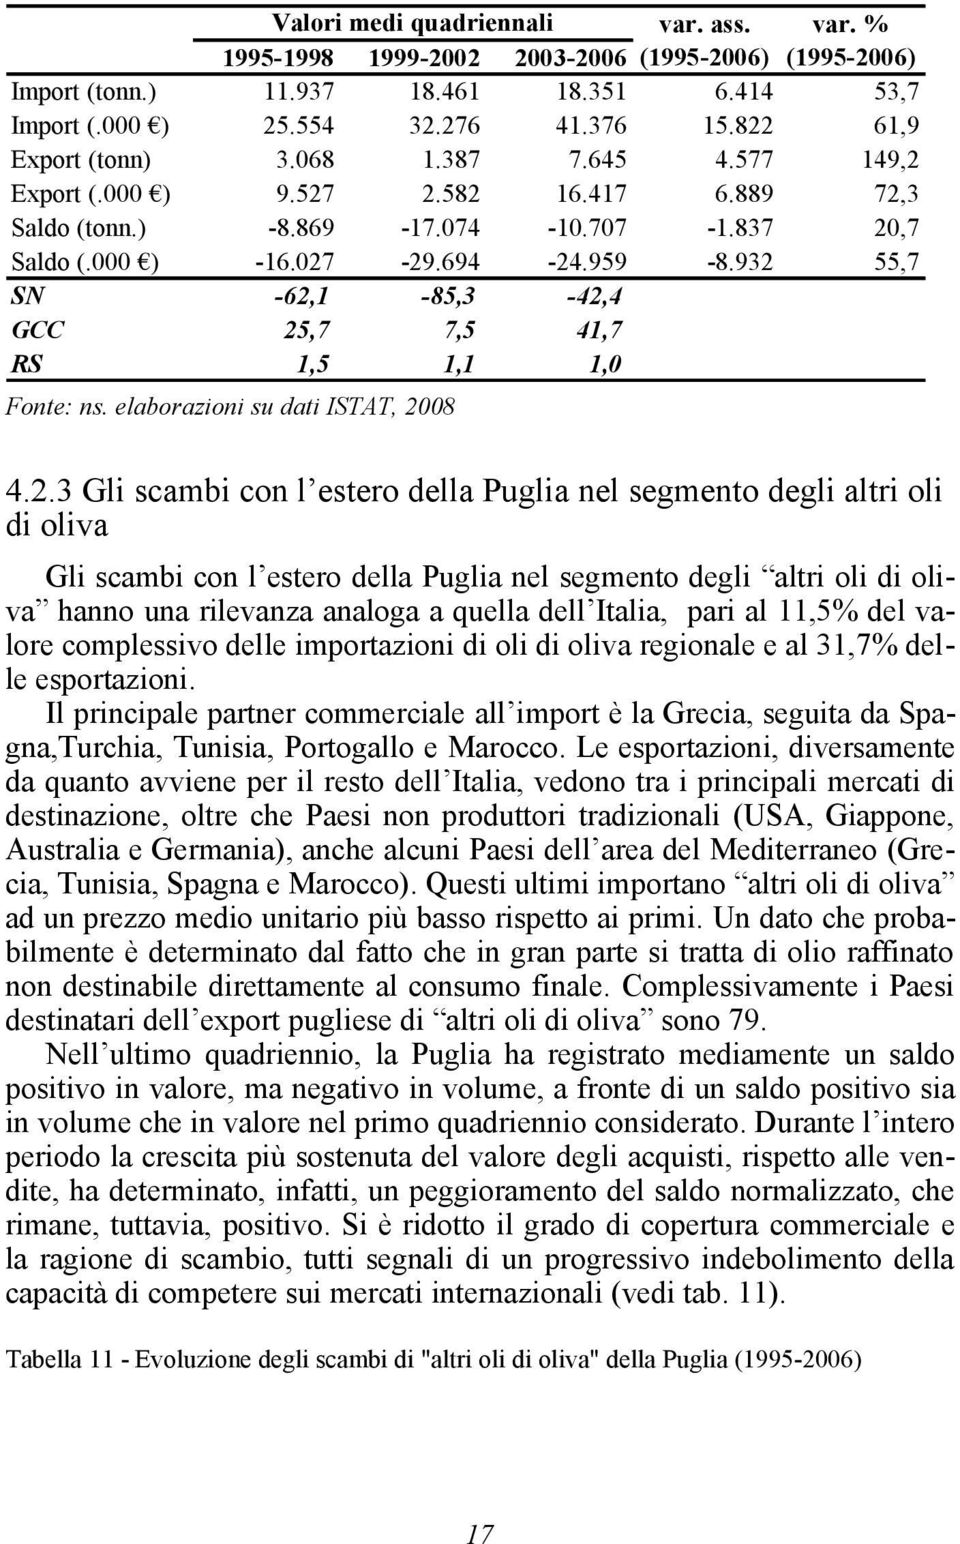 932 55,7 SN -62,1-85,3-42,4 GCC 25,7 7,5 41,7 RS 1,5 1,1 1,0 Fonte: ns. elaborazioni su dati ISTAT, 2008 4.2.3 Gli scambi con l estero della Puglia nel segmento degli altri oli di oliva Gli scambi